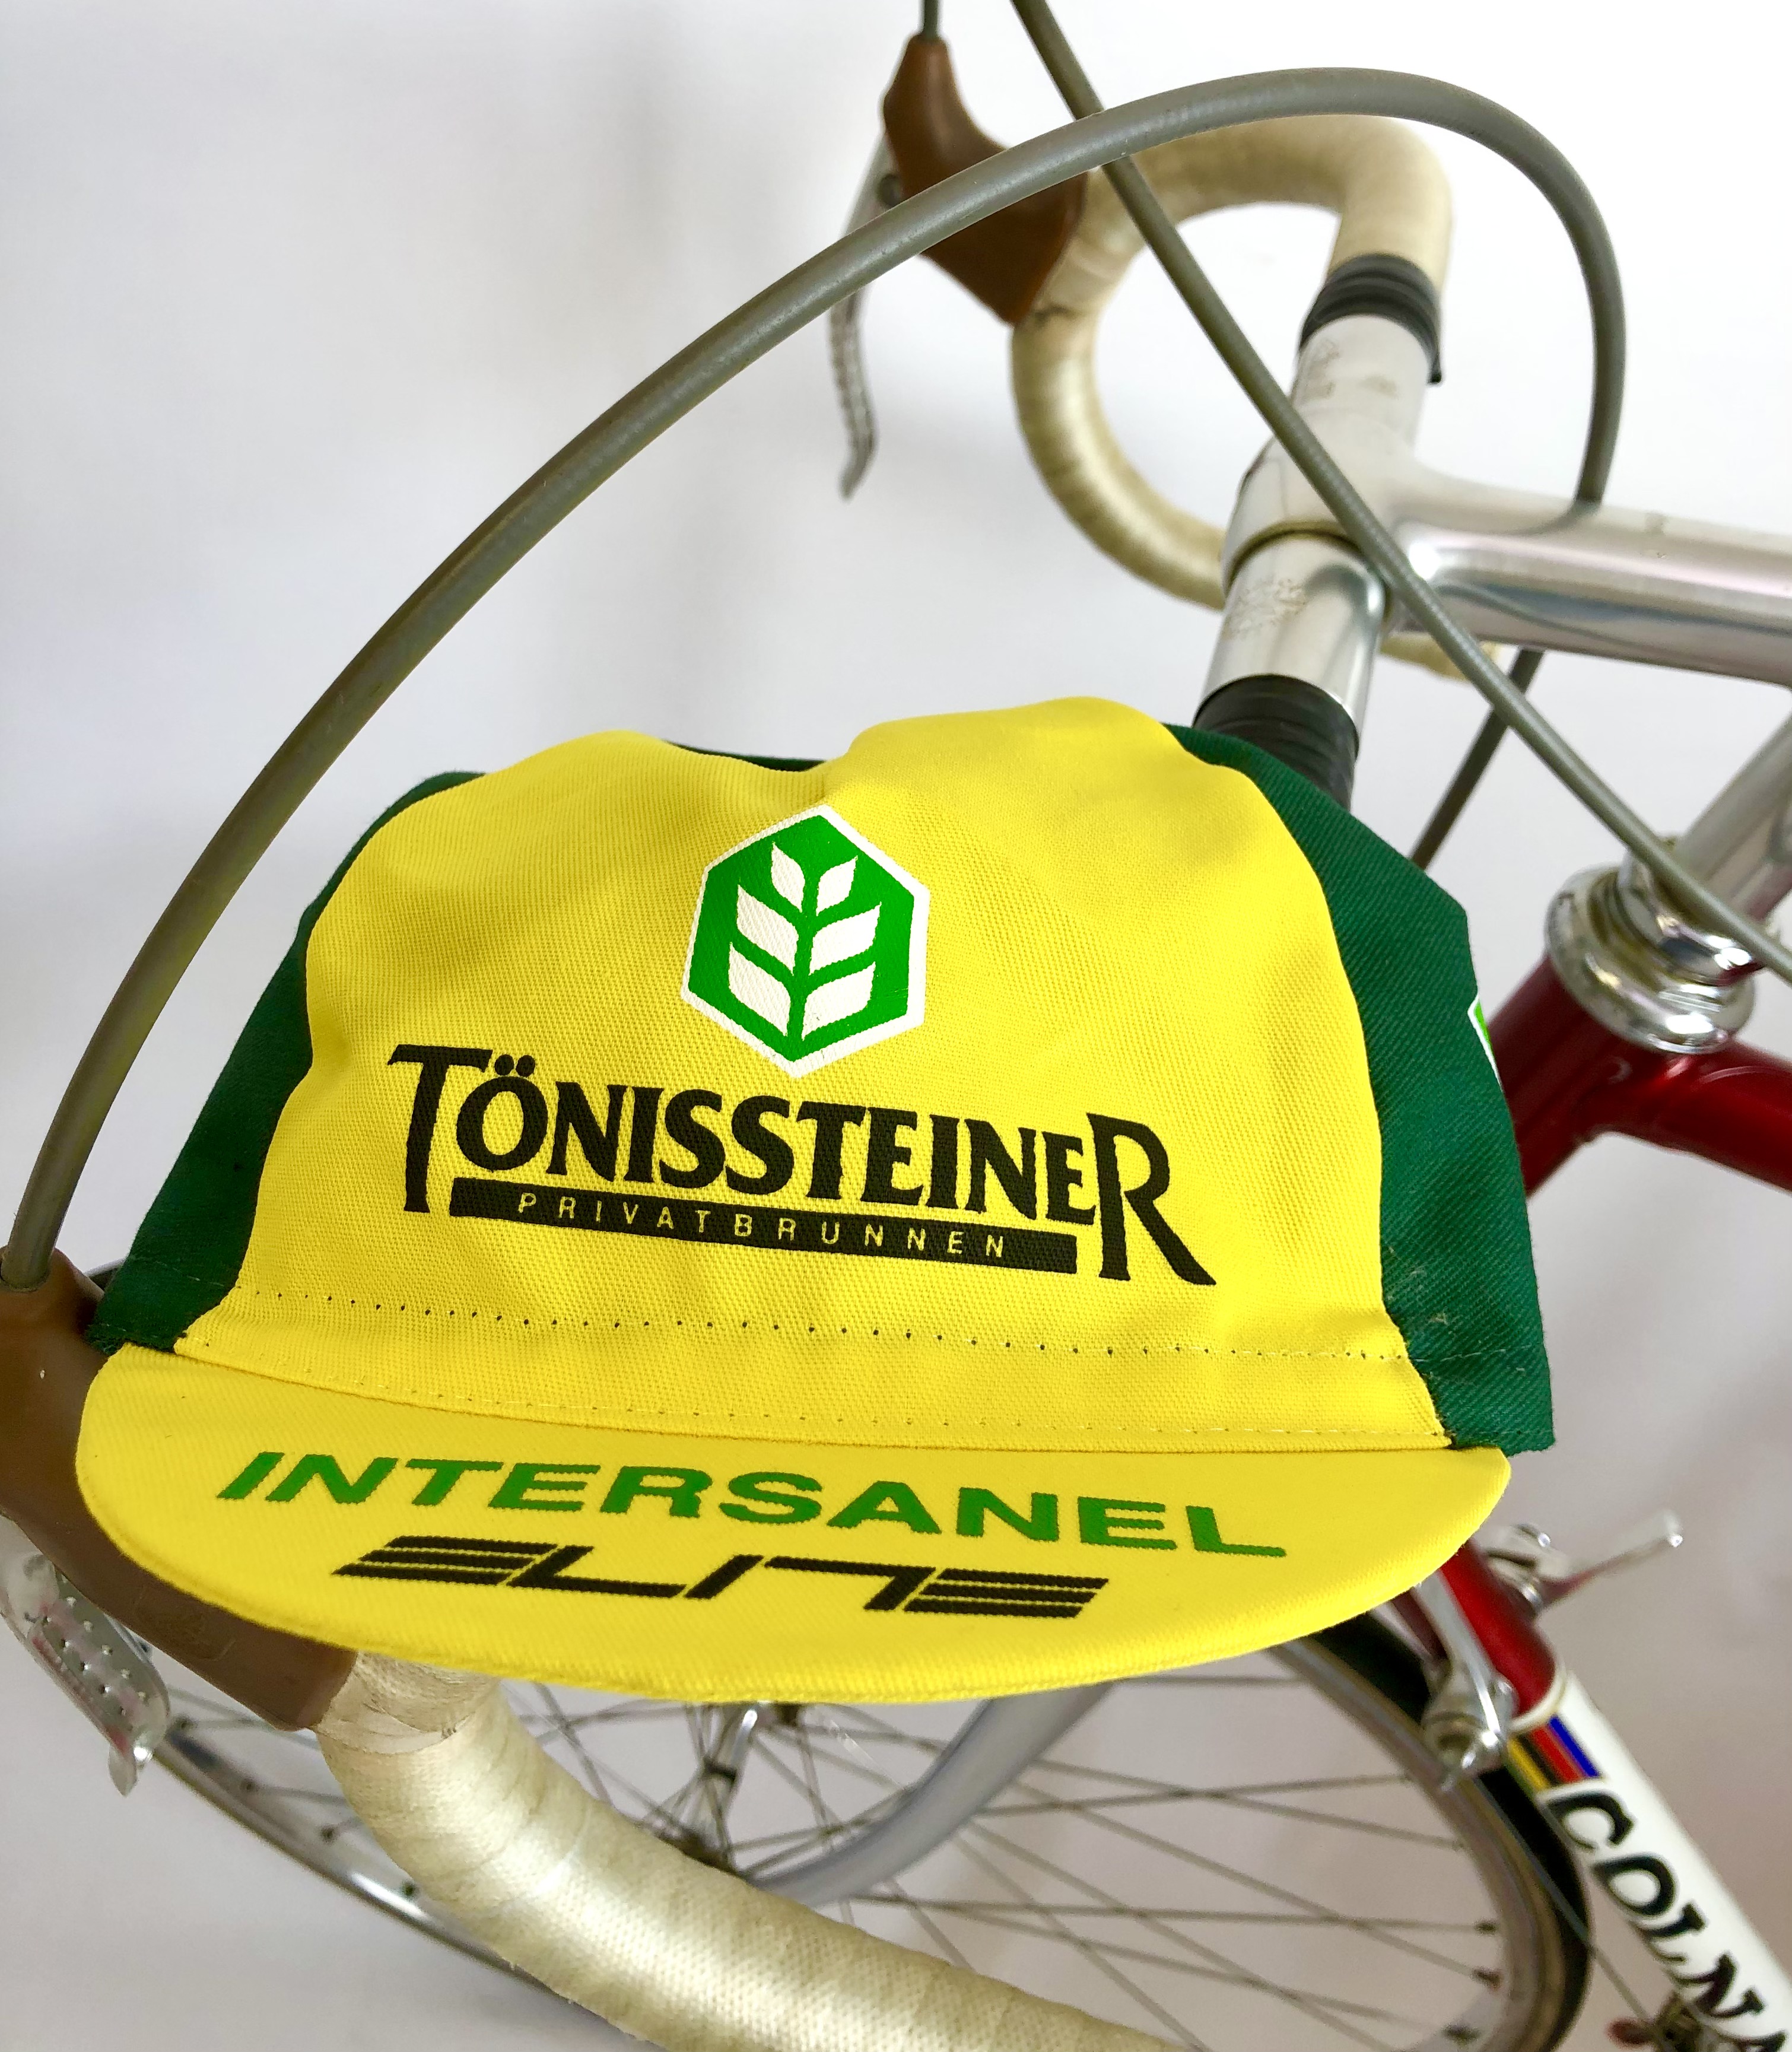 Retro Radsportmütze Team Tönissteiner - Intersanel